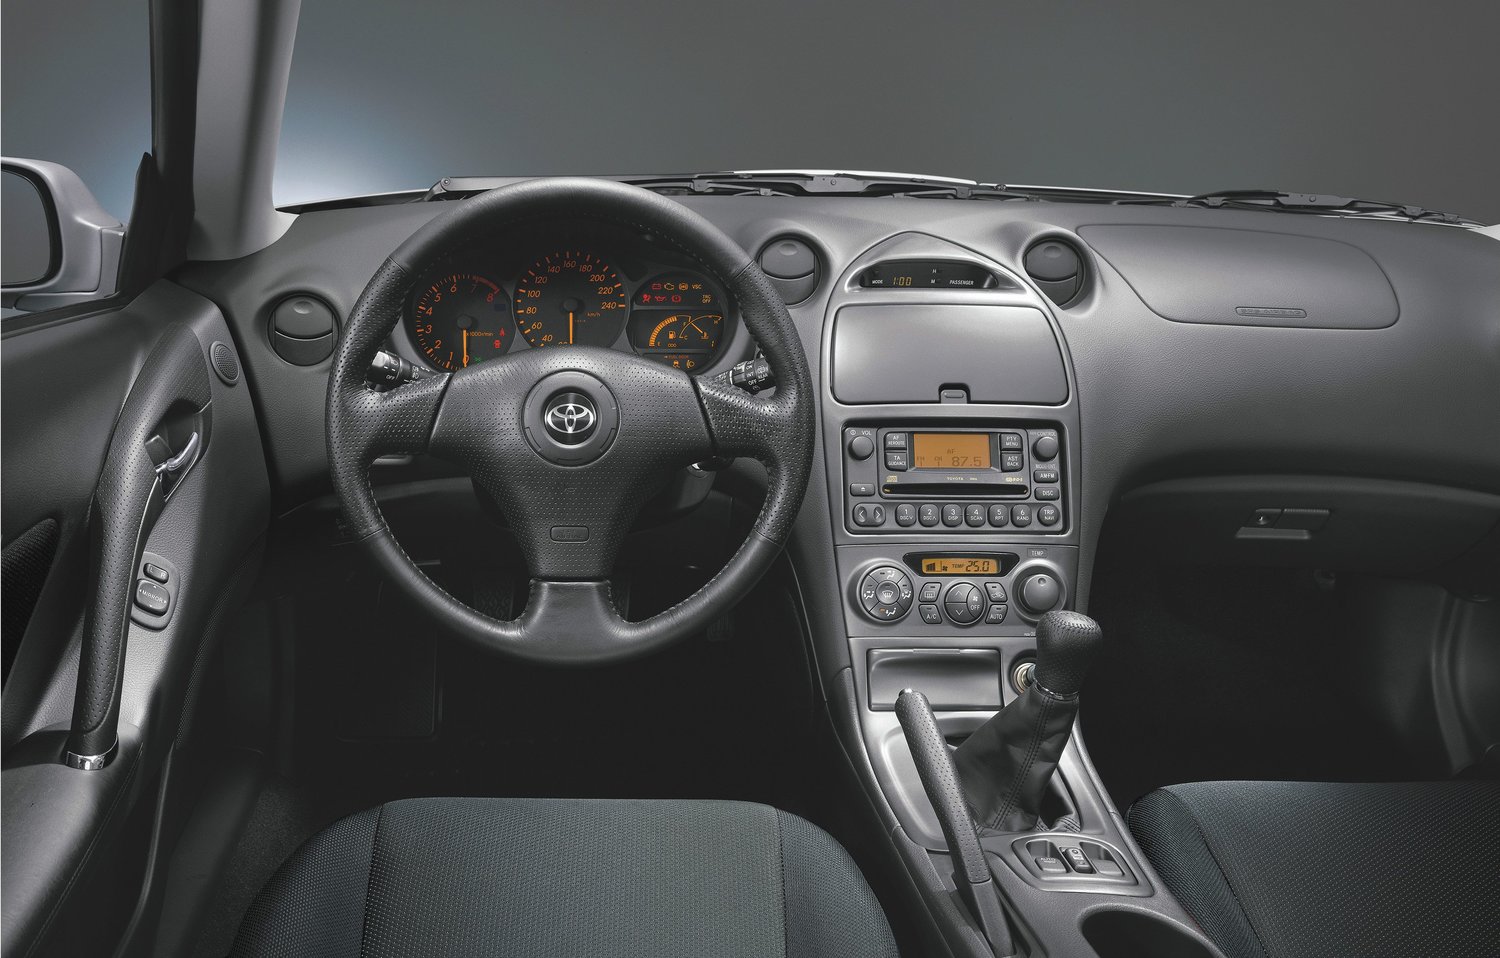 хэтчбек 3 дв. Toyota Celica 2002 - 2006г выпуска модификация 1.8 AT (143 л.с.)